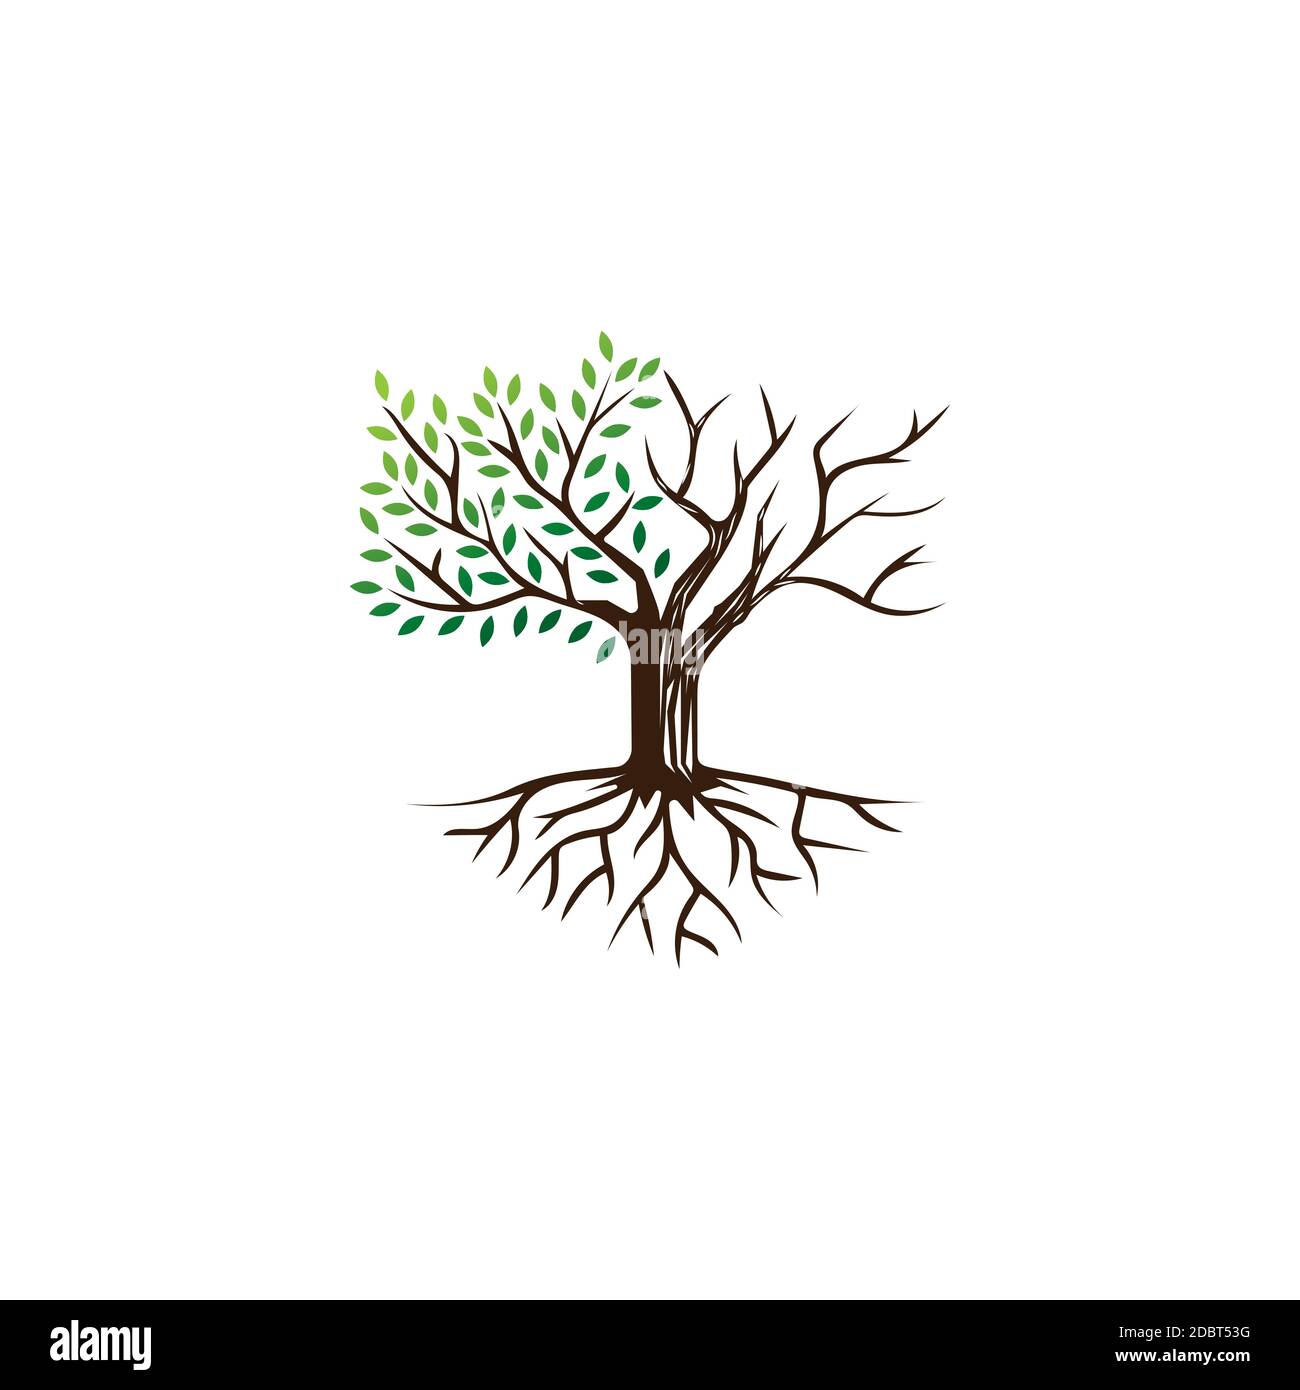 Modello di disegno del logo dell'illustrazione dell'albero della vita e della morte Illustrazione Vettoriale